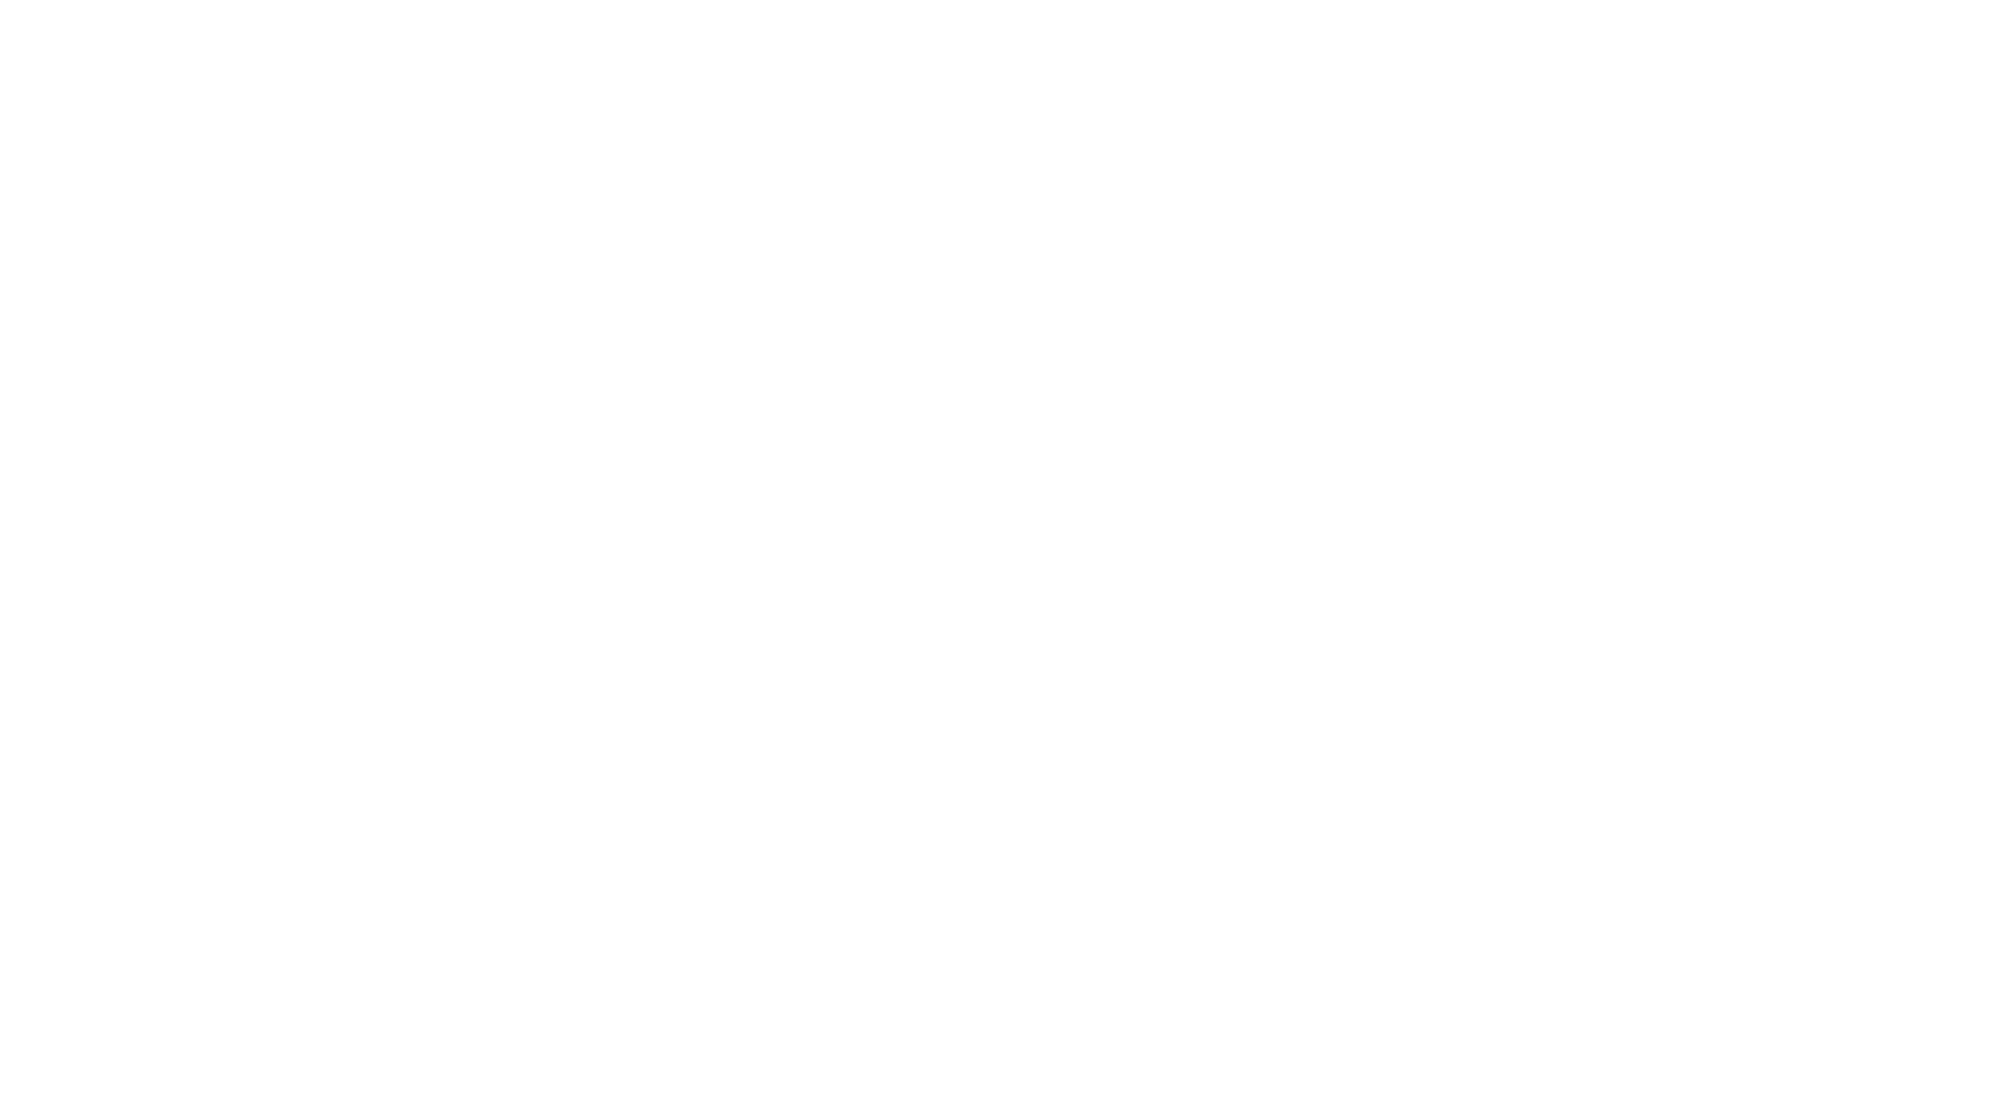 yachtwear australia